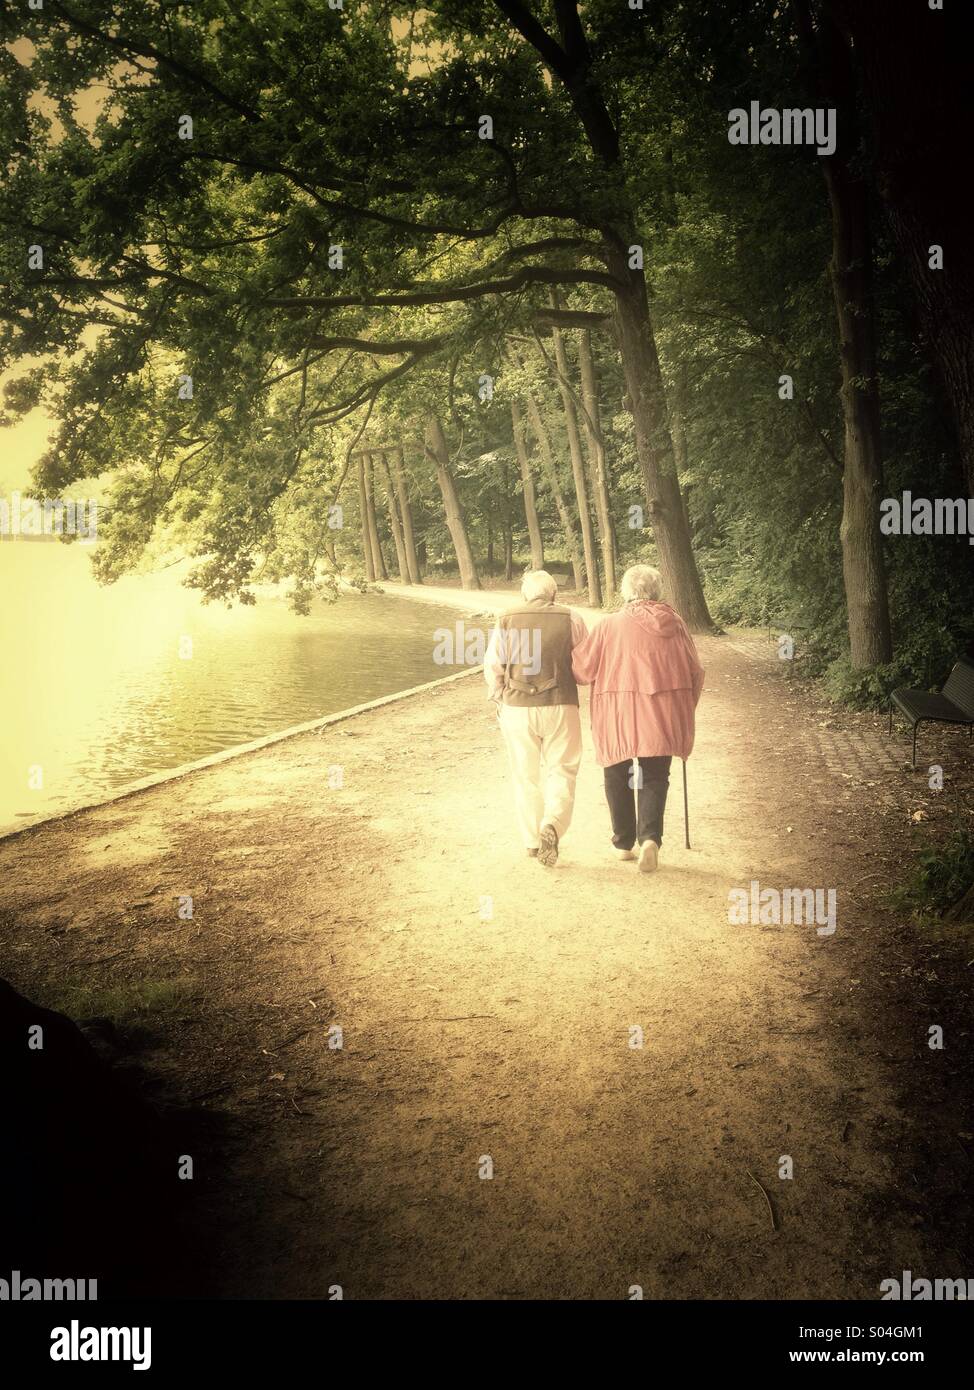 La vieillesse, senior couple walking Banque D'Images